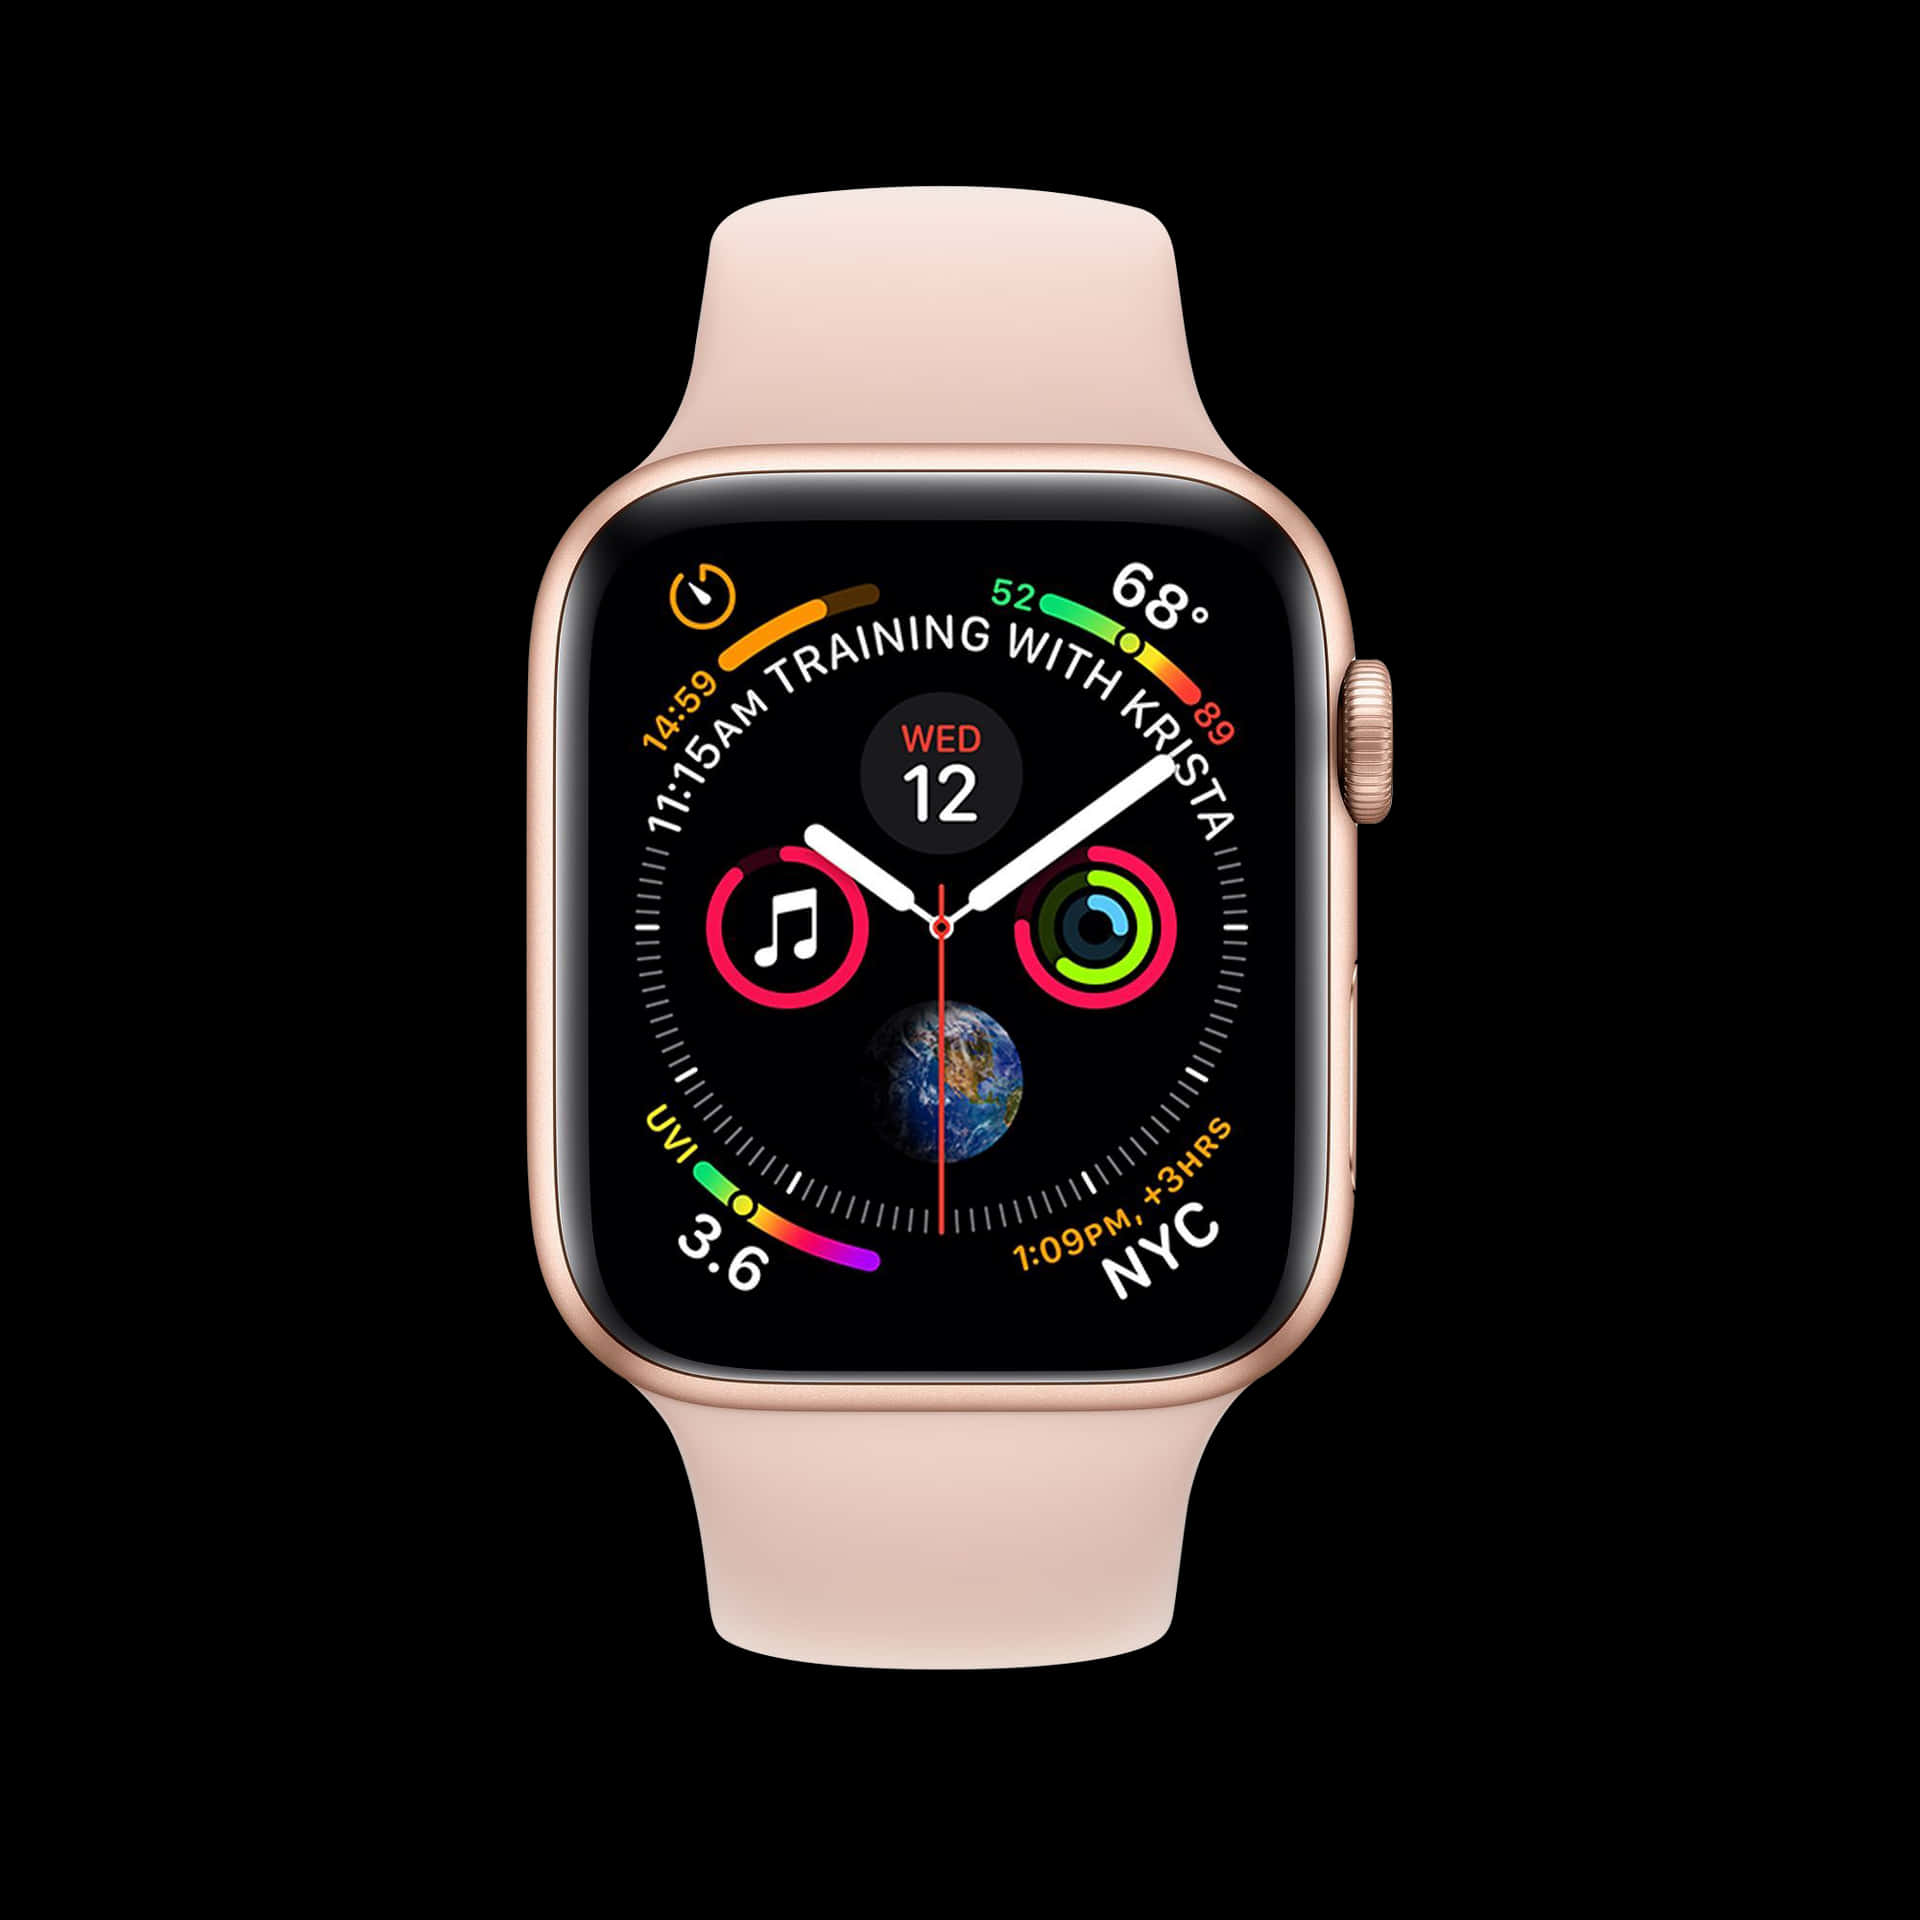 Machensie Sich Bereit, Ihr Iphone-erlebnis Mit Der Apple Watch Auf Die Nächste Stufe Zu Heben.